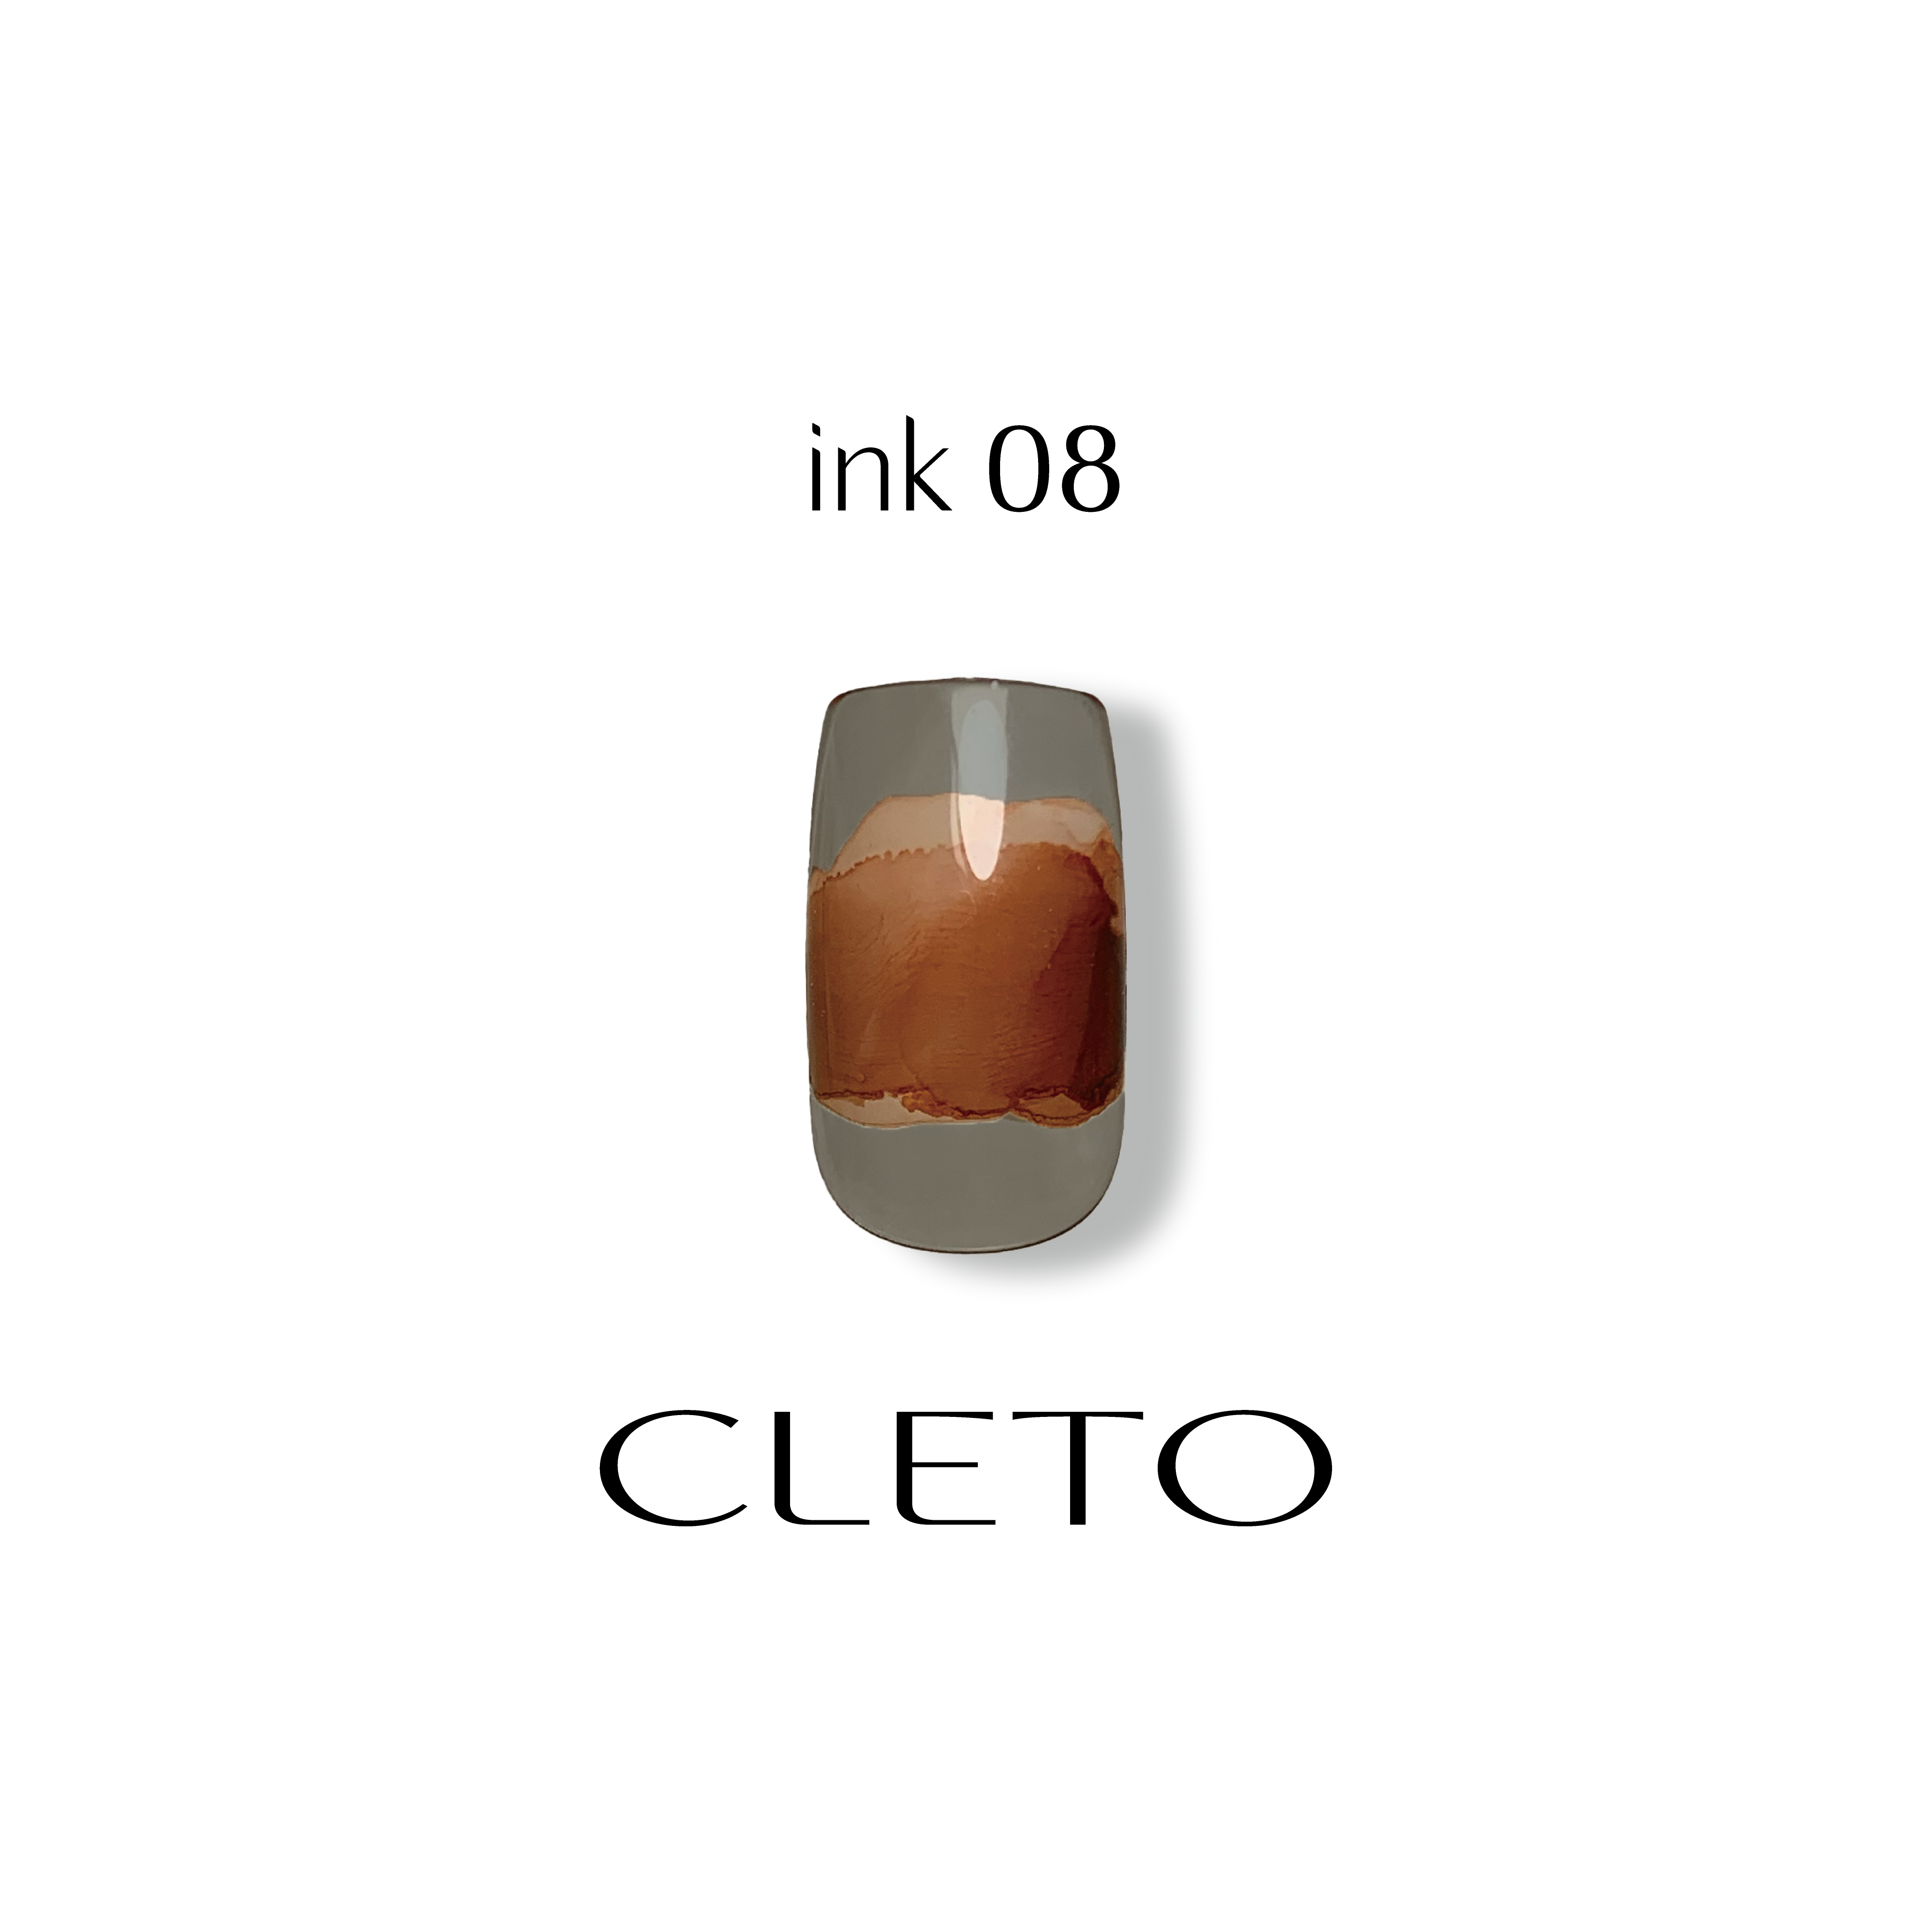 Cleto Ink 08